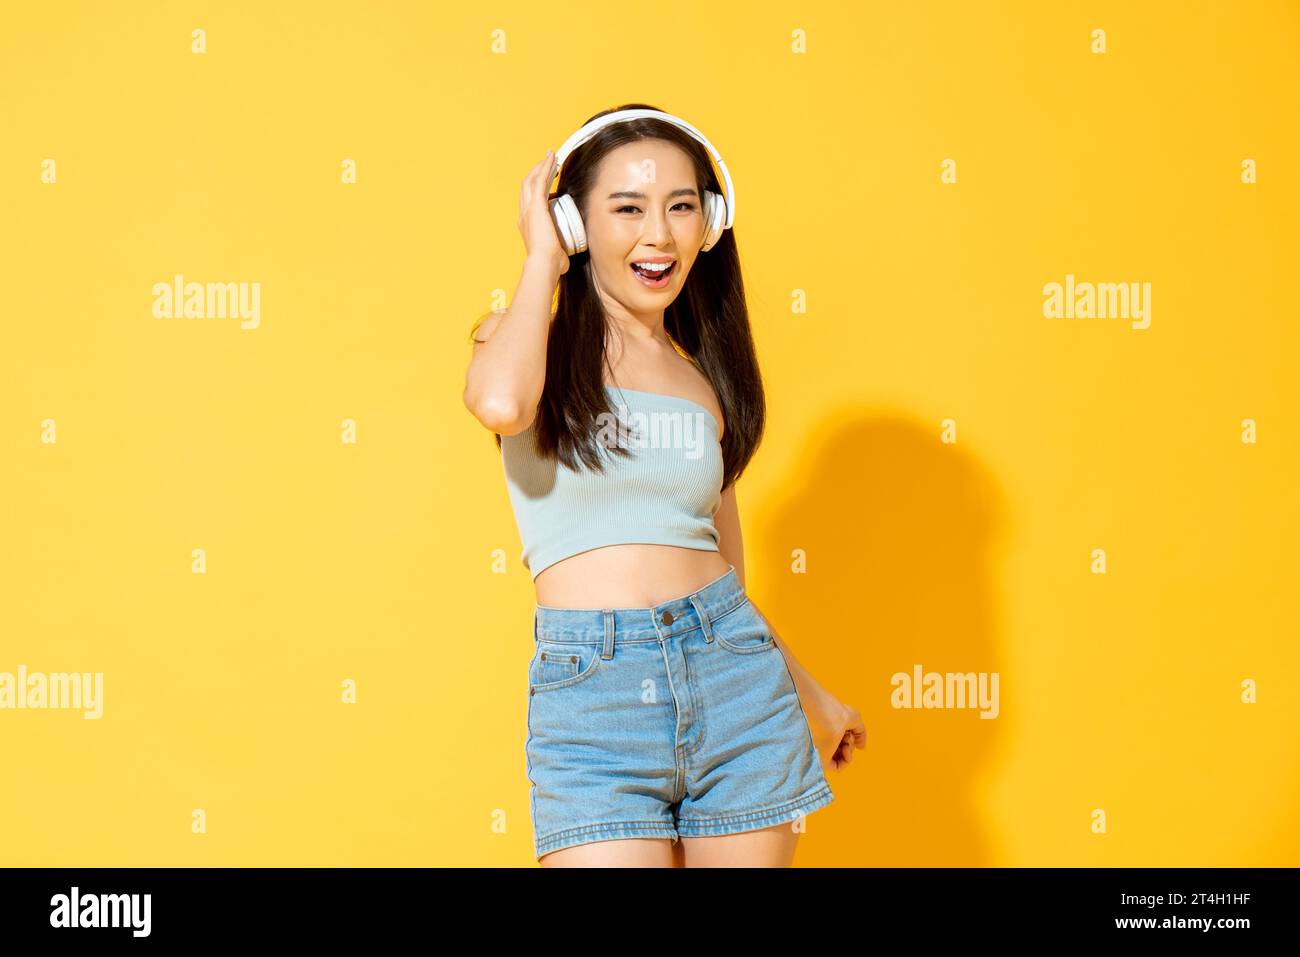 Junge hübsche asiatische Frau, die Kopfhörer trägt, Musik hört und tanzt im gelben Hintergrund des Studios Stockfoto